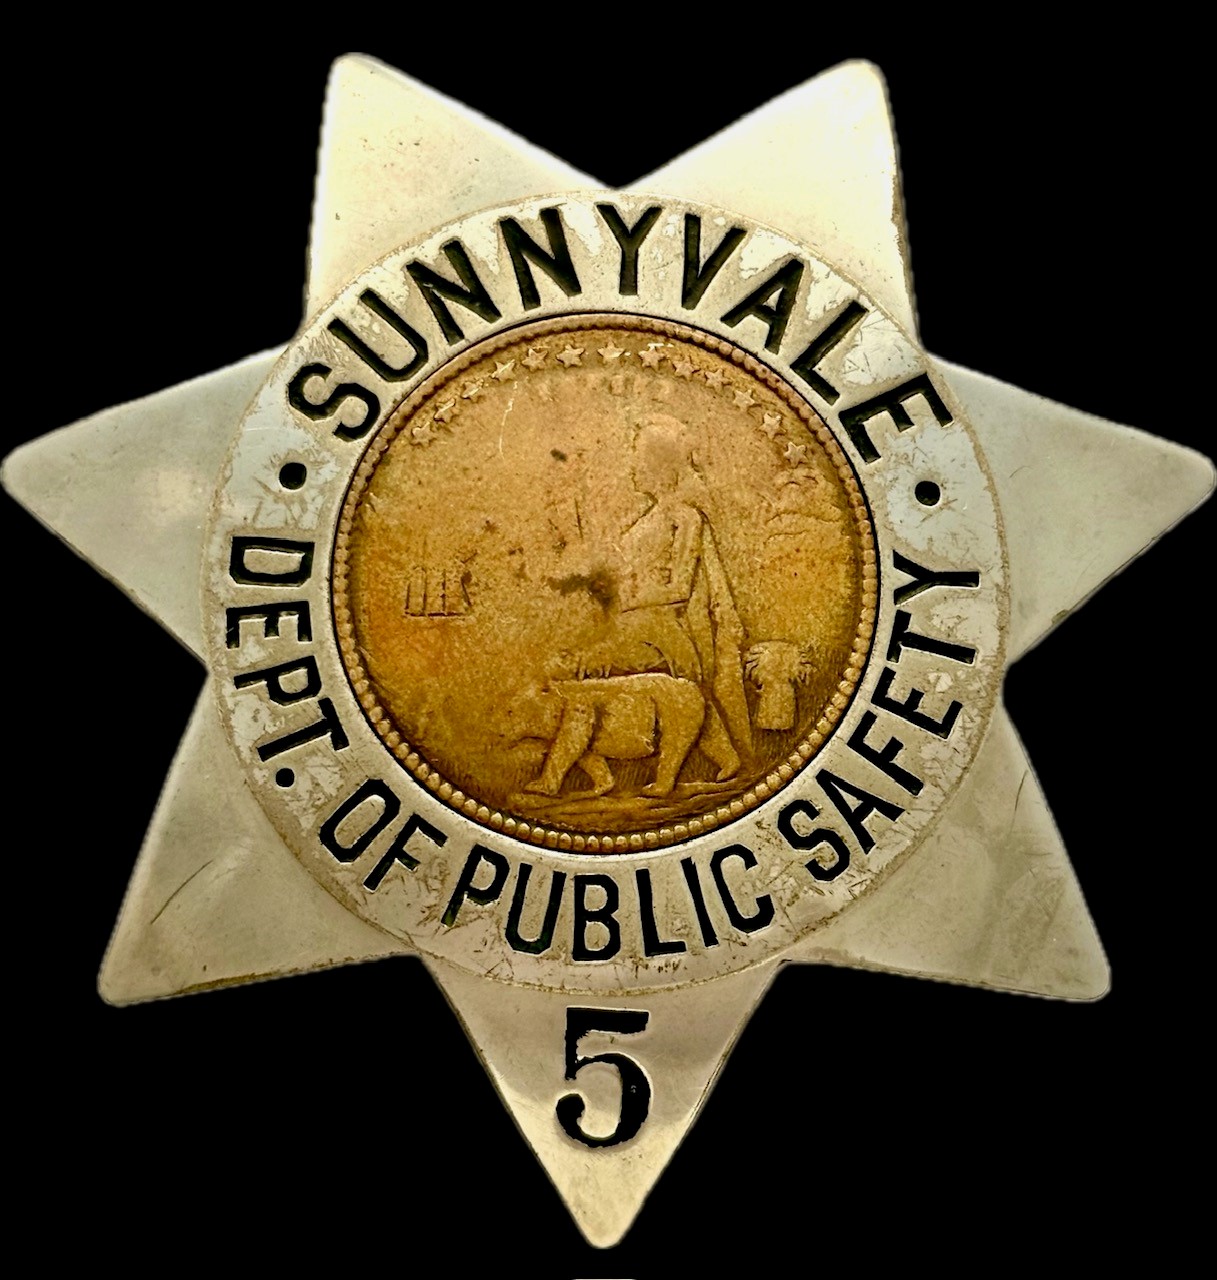 Sunnyvale DPS badge 5 